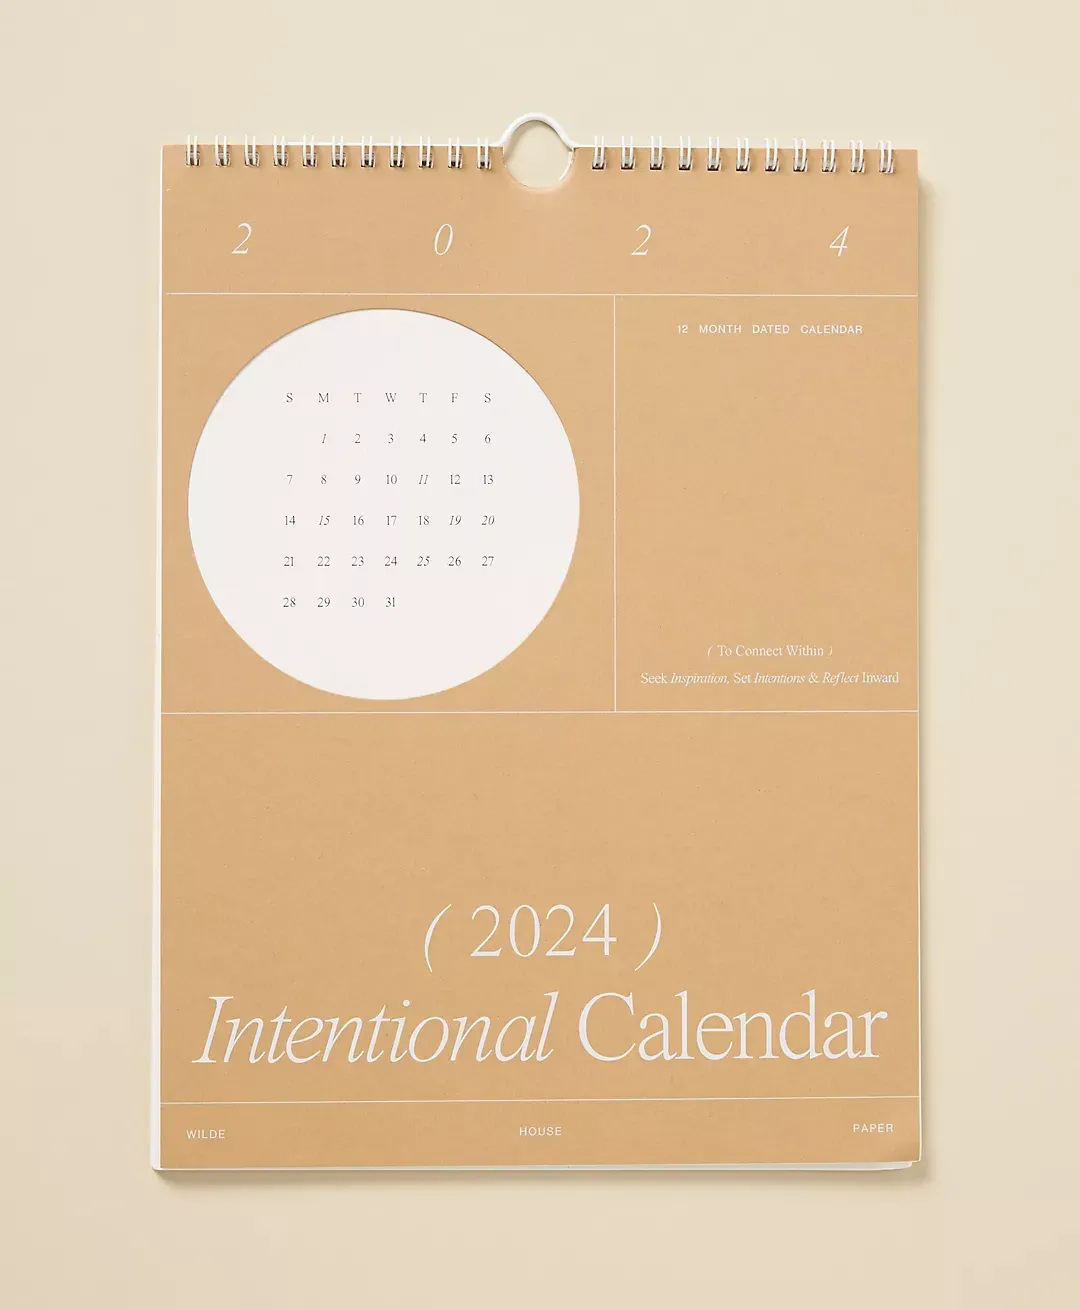 Intentional Calendar